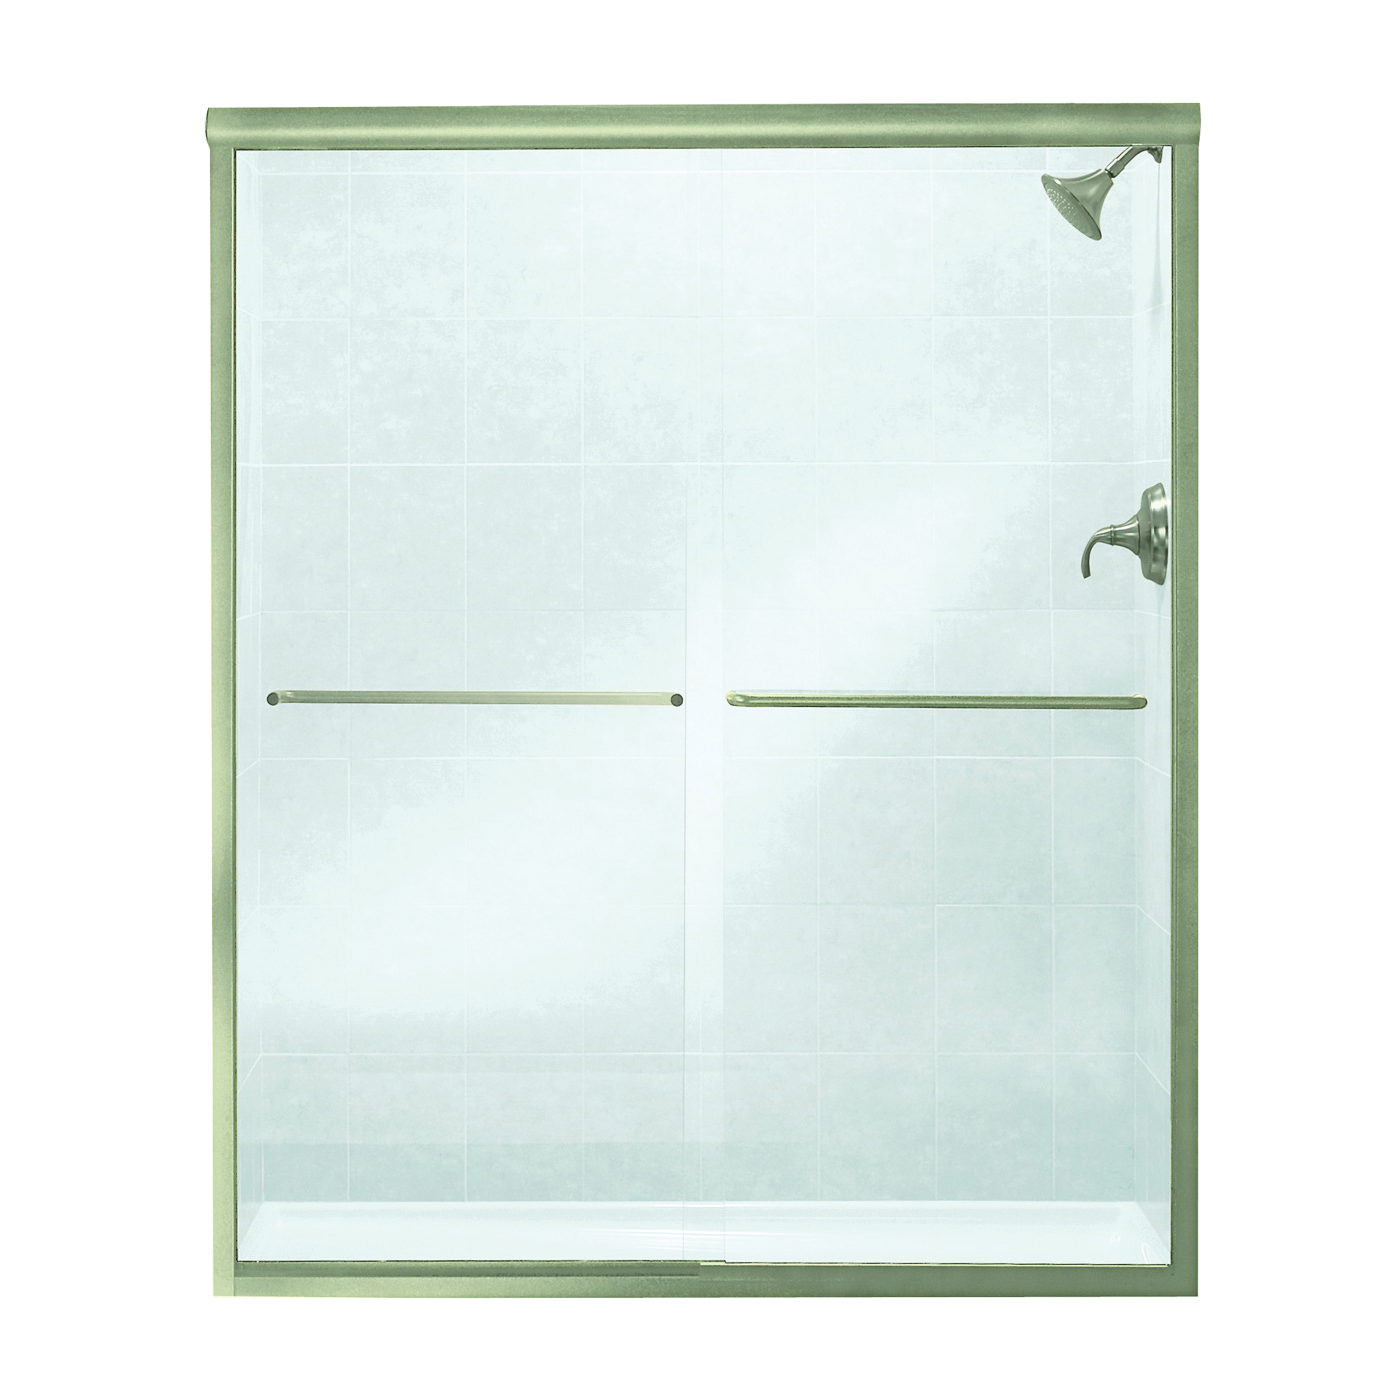 5475-59N-G05 Shower Door, Clear Glass, Tempered Glass, Frameless Frame, Aluminum Frame, Stainless Steel